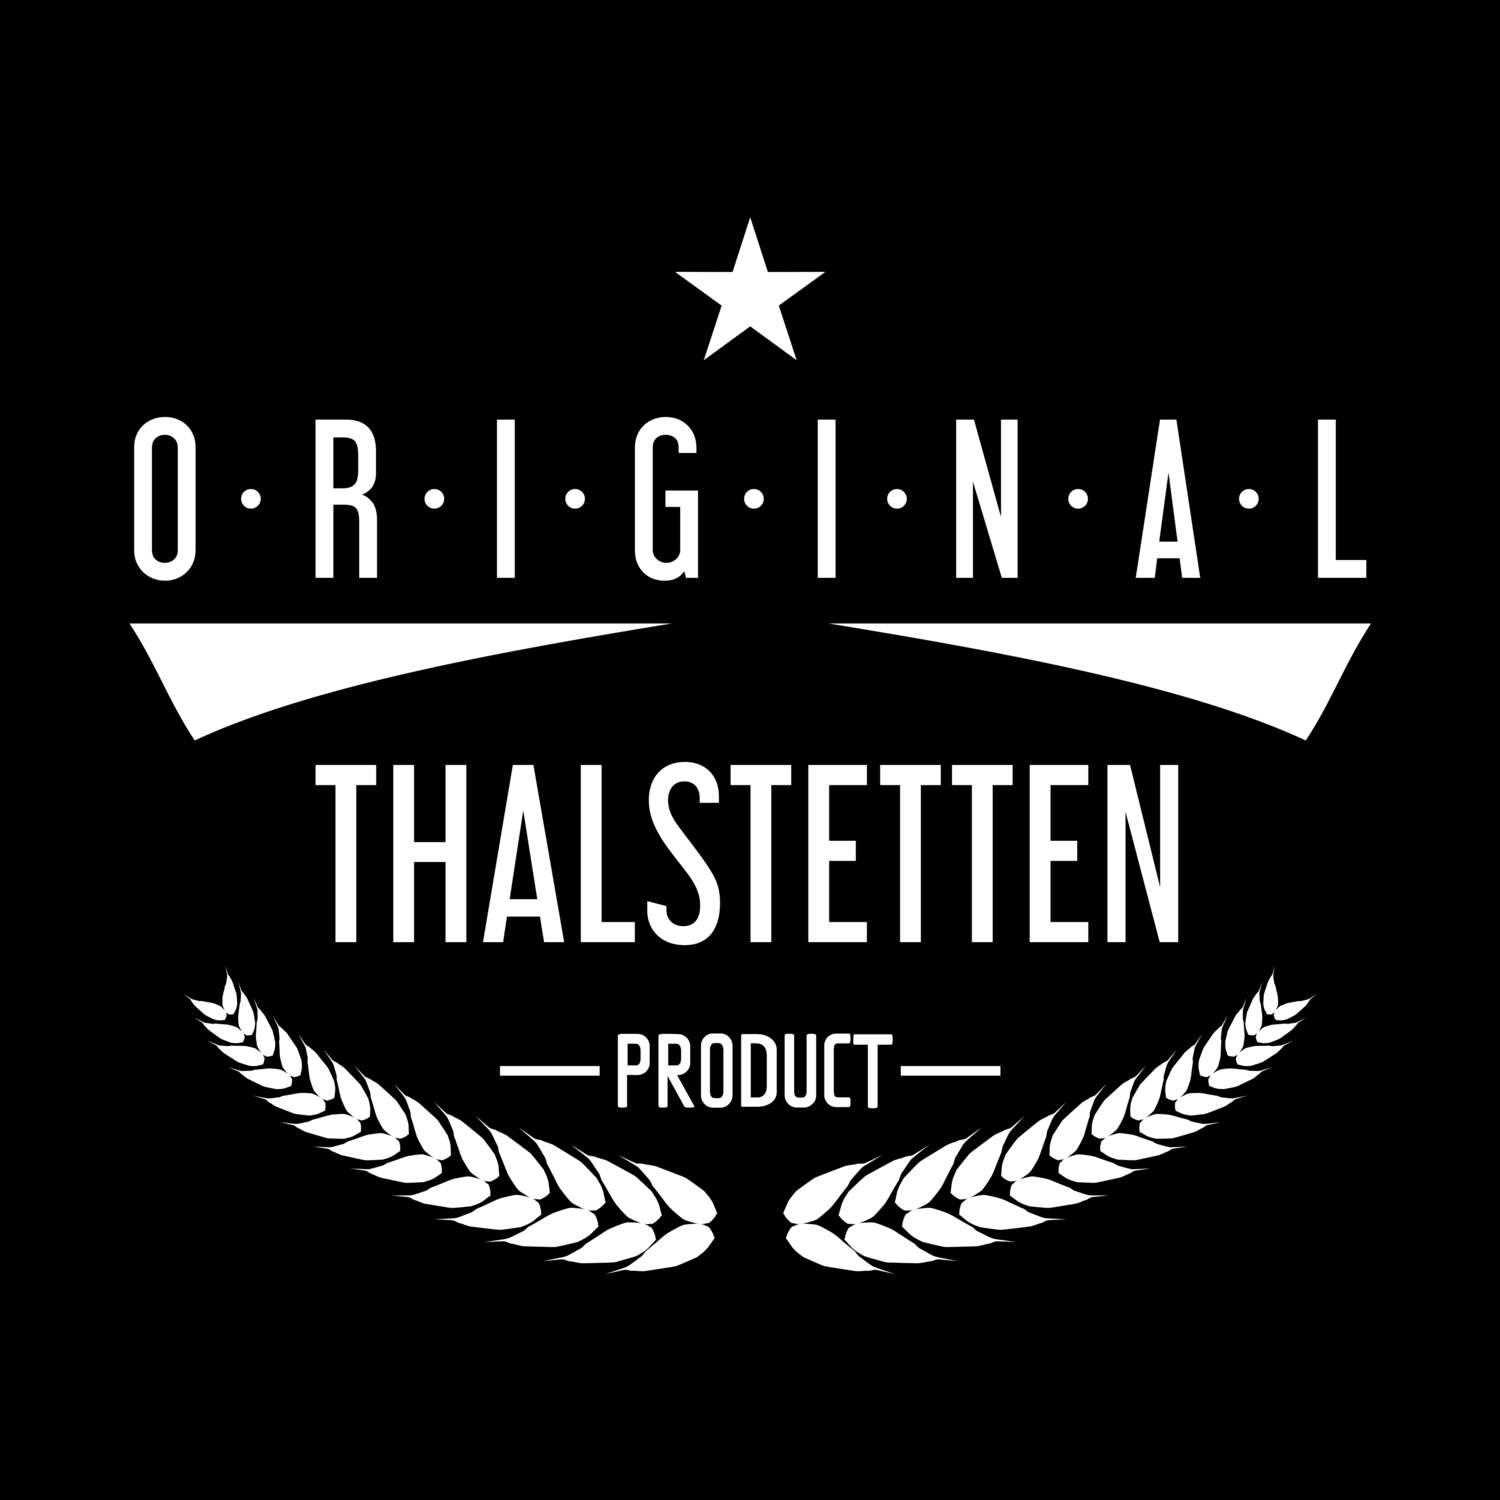 Thalstetten T-Shirt »Original Product«